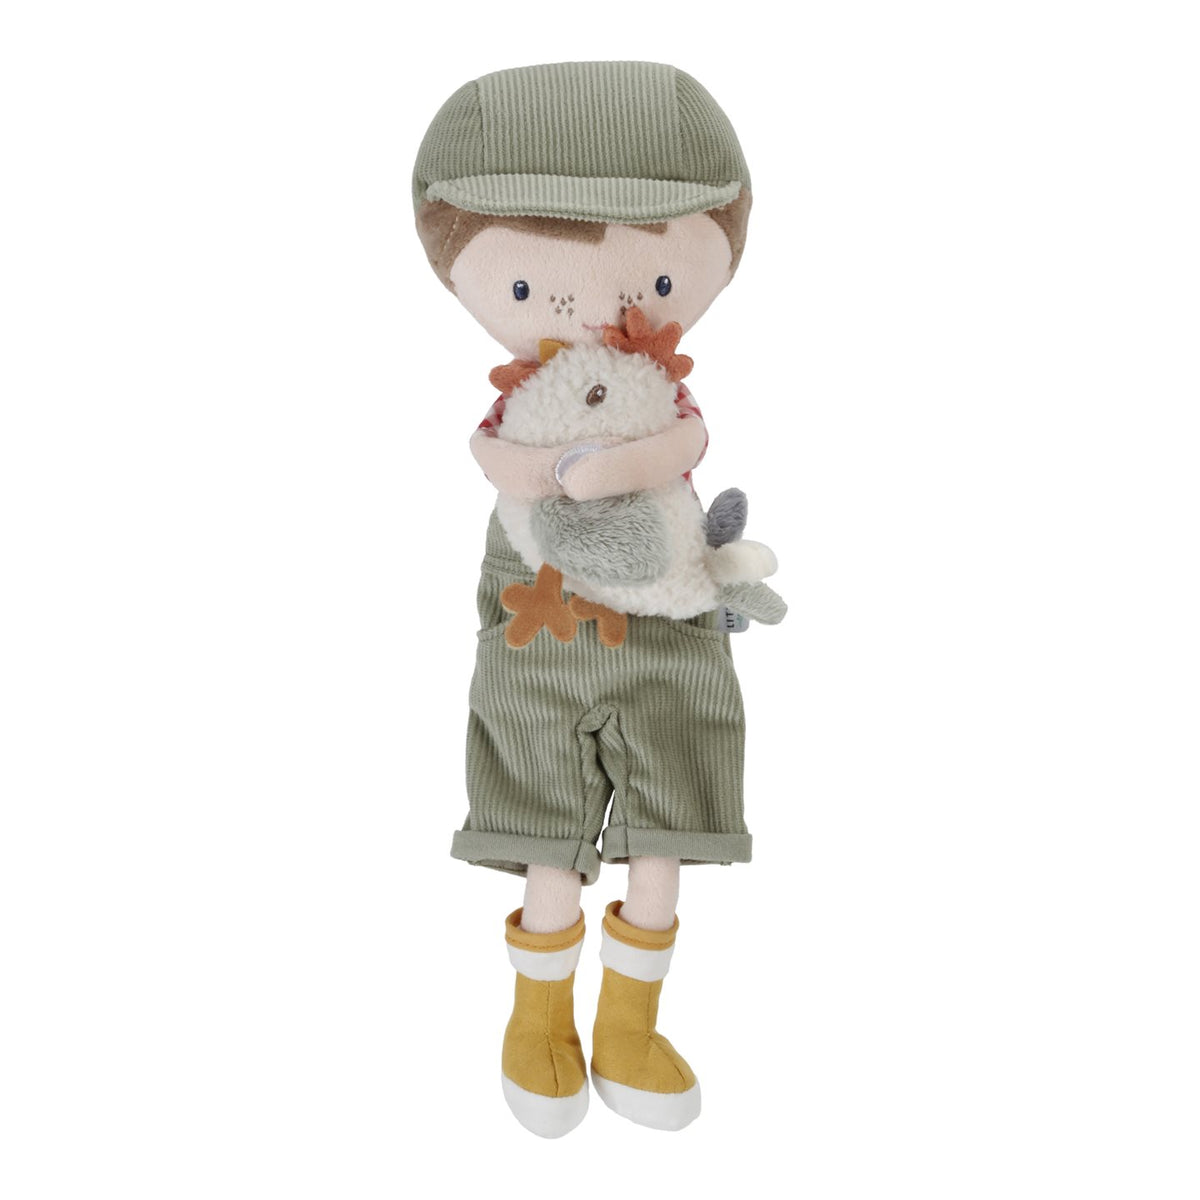 Cuddle doll Farmer Jim with chicken 35cm